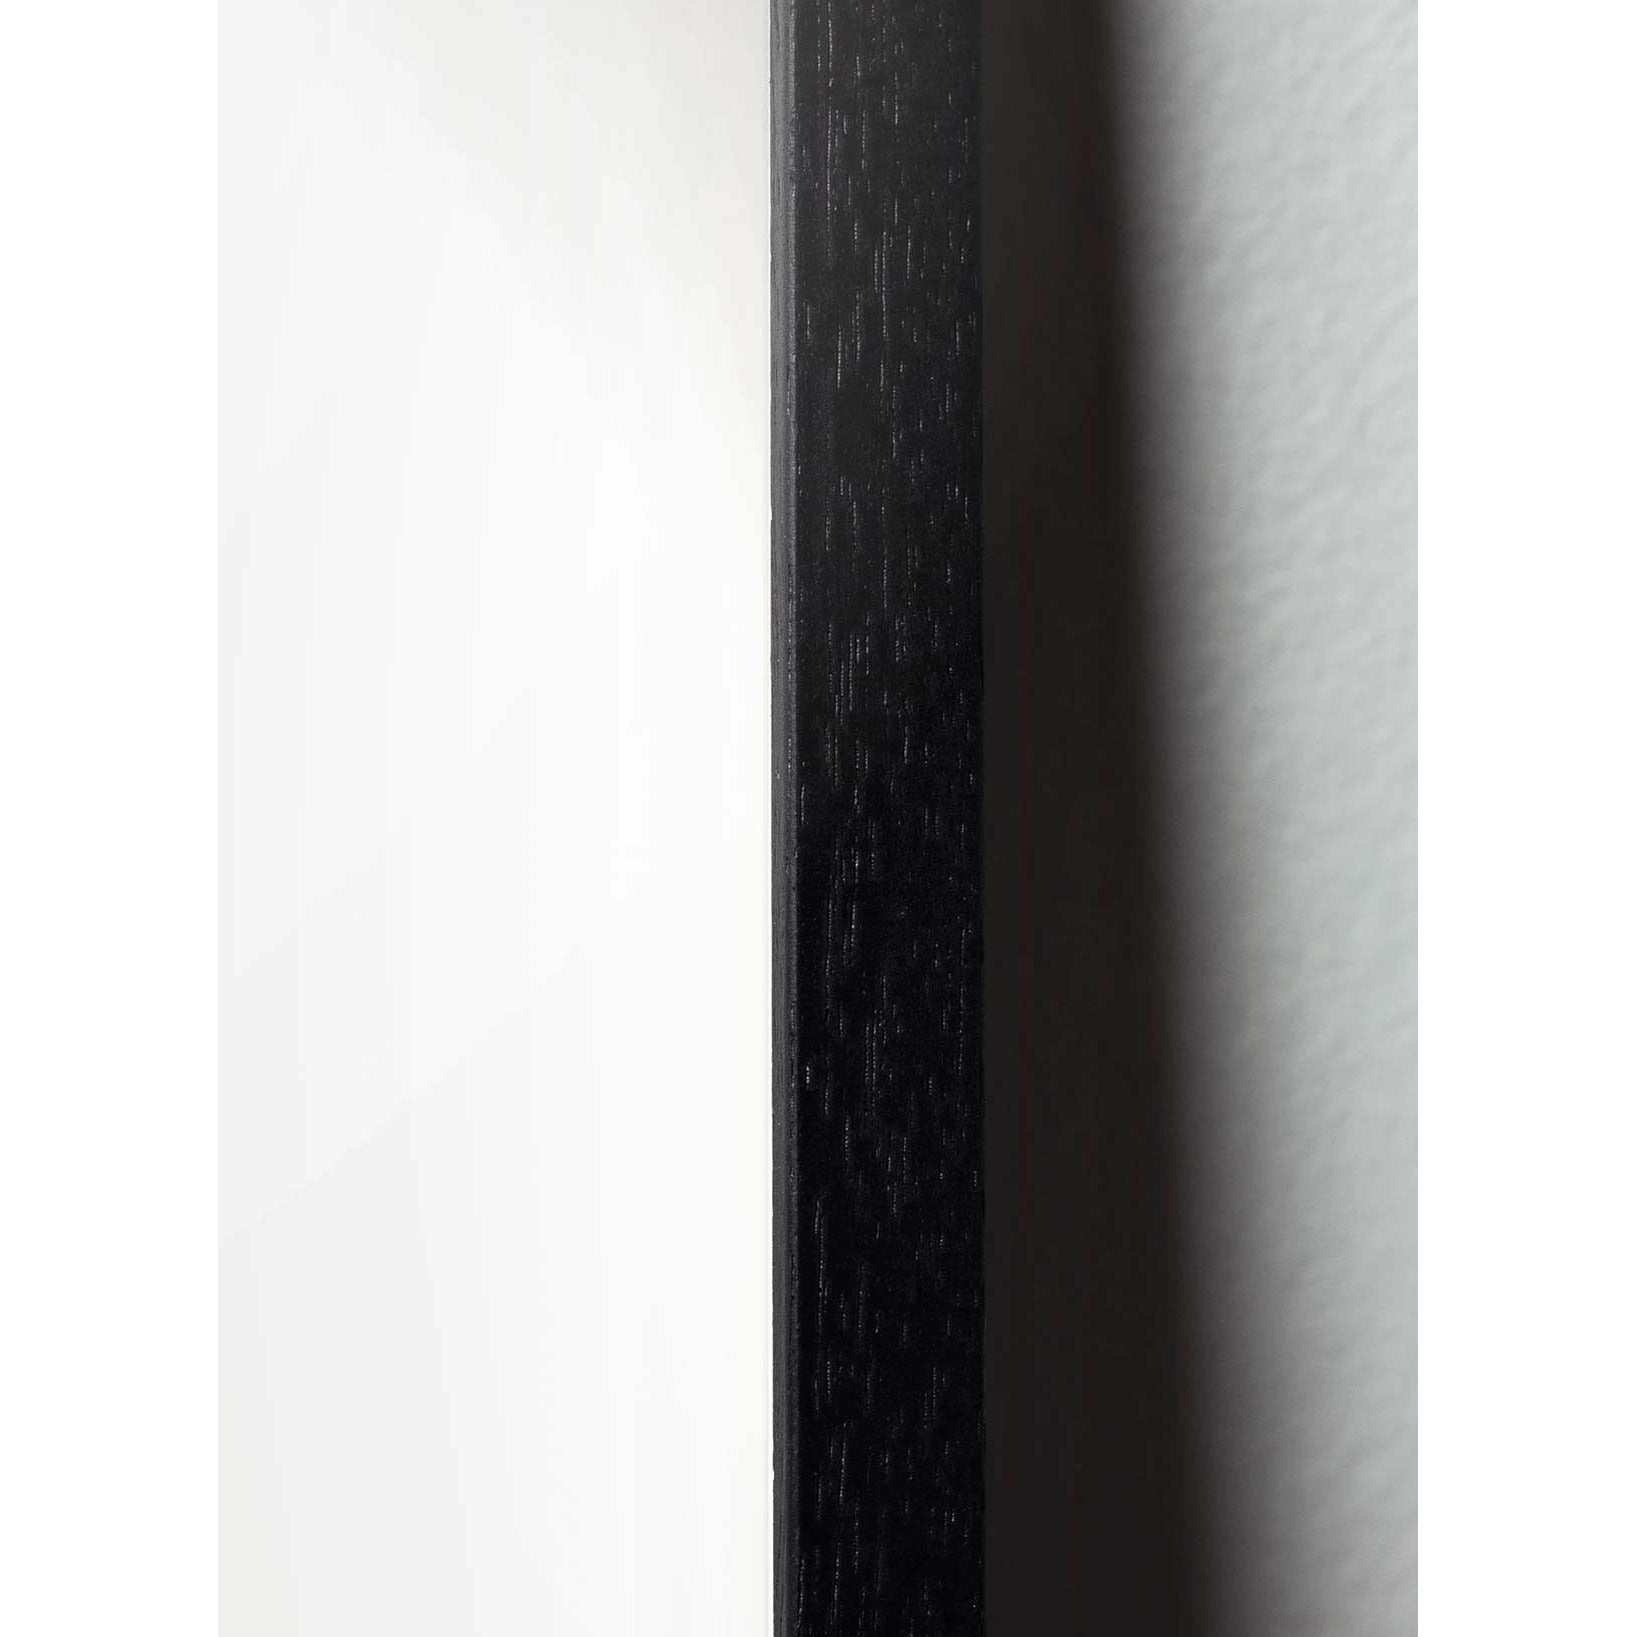 Poster di linea formica da un'antchild, cornice in legno laccato nero 50x70 cm, sfondo bianco